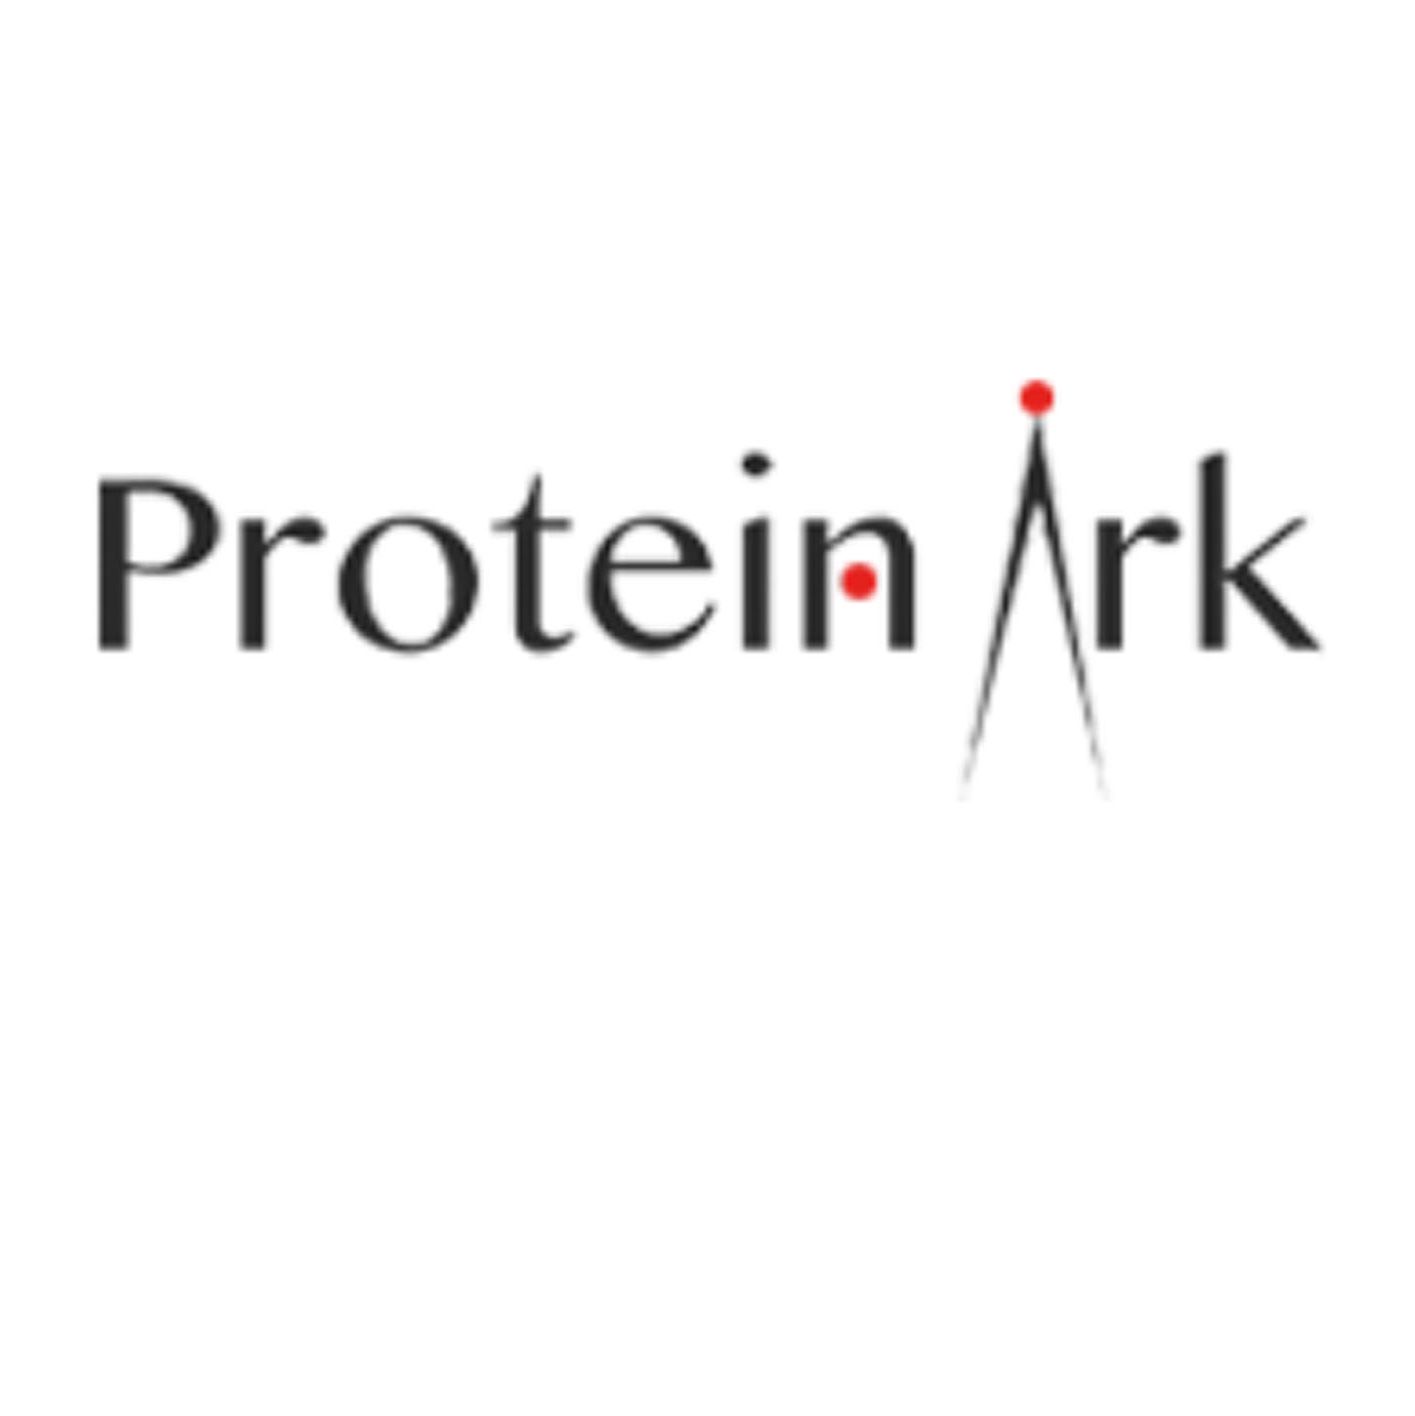 Protein Ark  提供全面的蛋白质相关耗材与试剂、蛋白表达、蛋白纯化、蛋白电泳、蛋白结晶